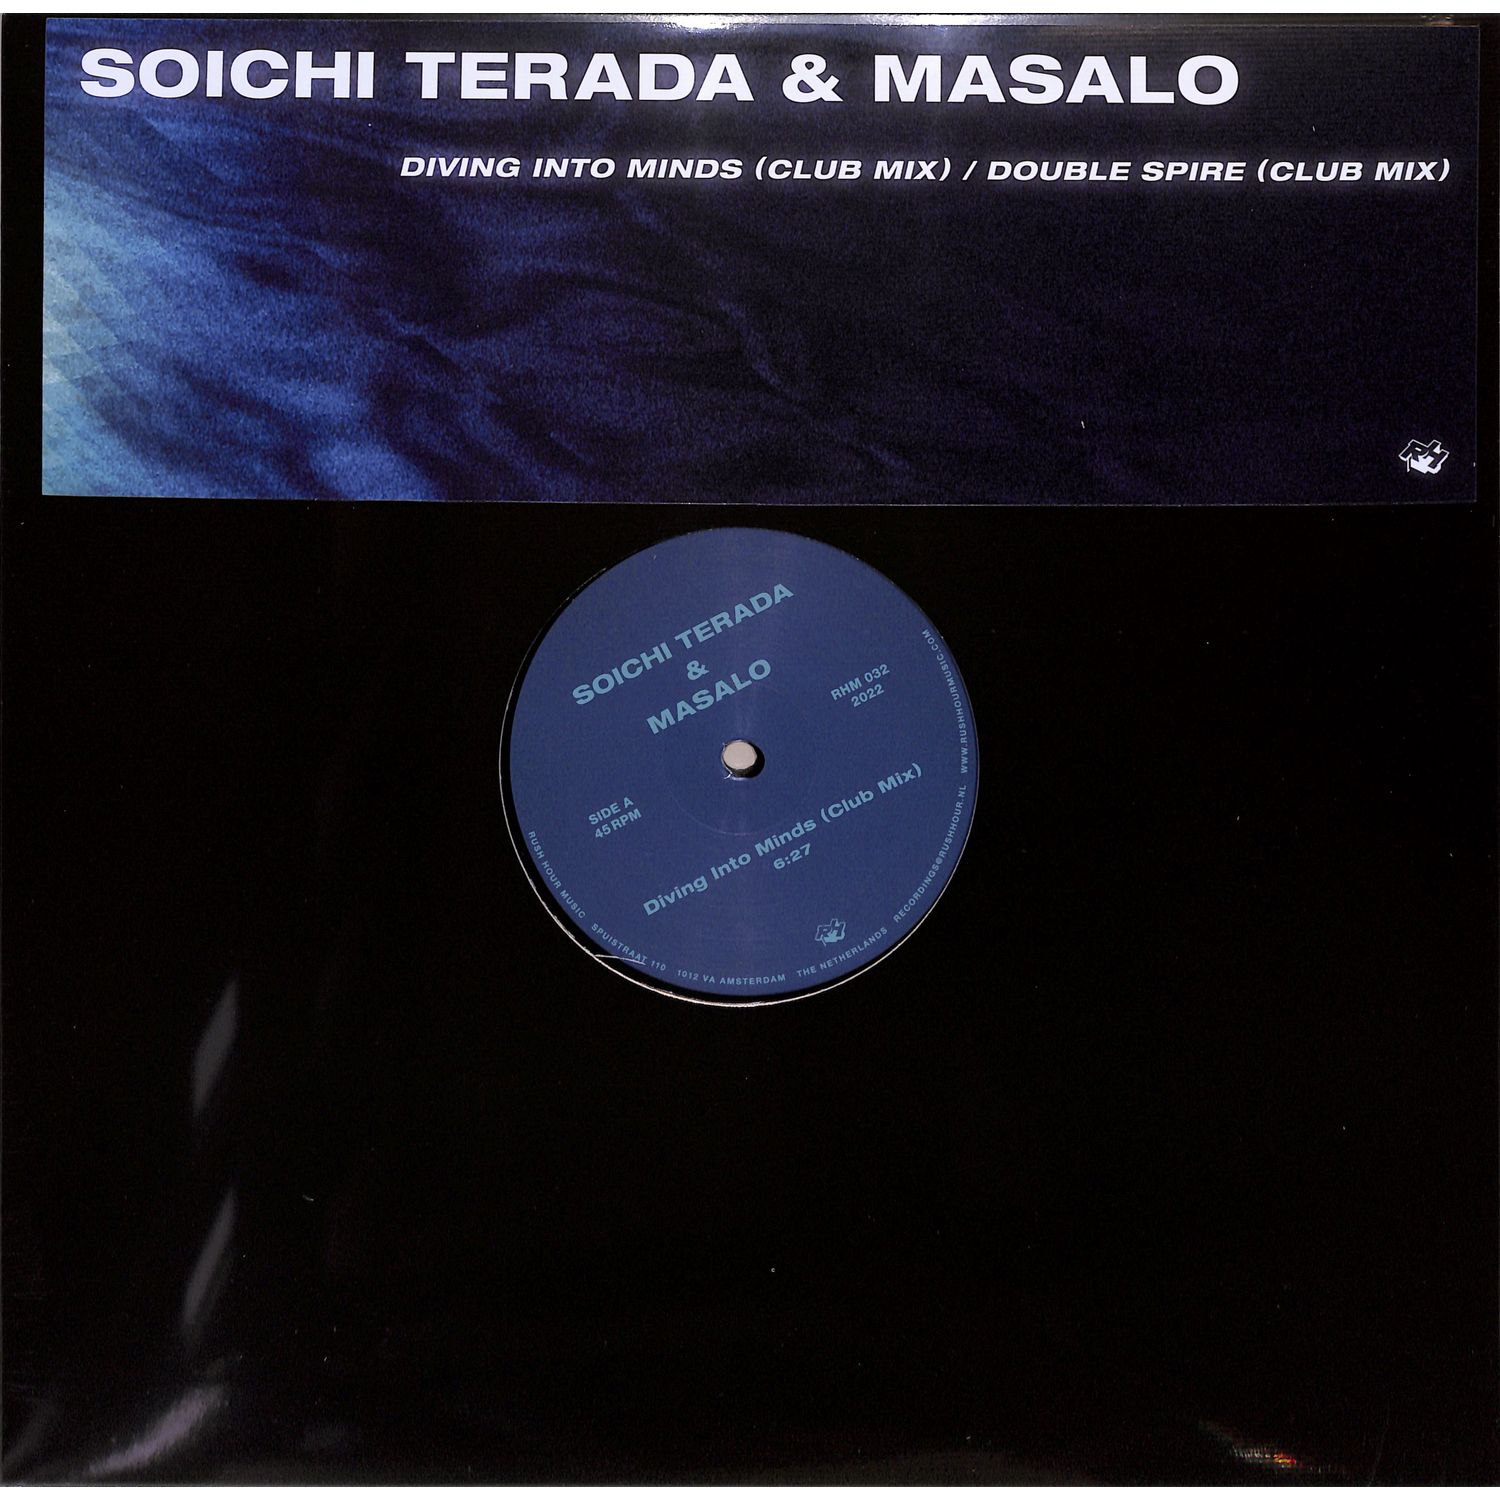 Soichi Terada & Masalo - DIVING INTO MINDS / DOUBLE SPIRE 